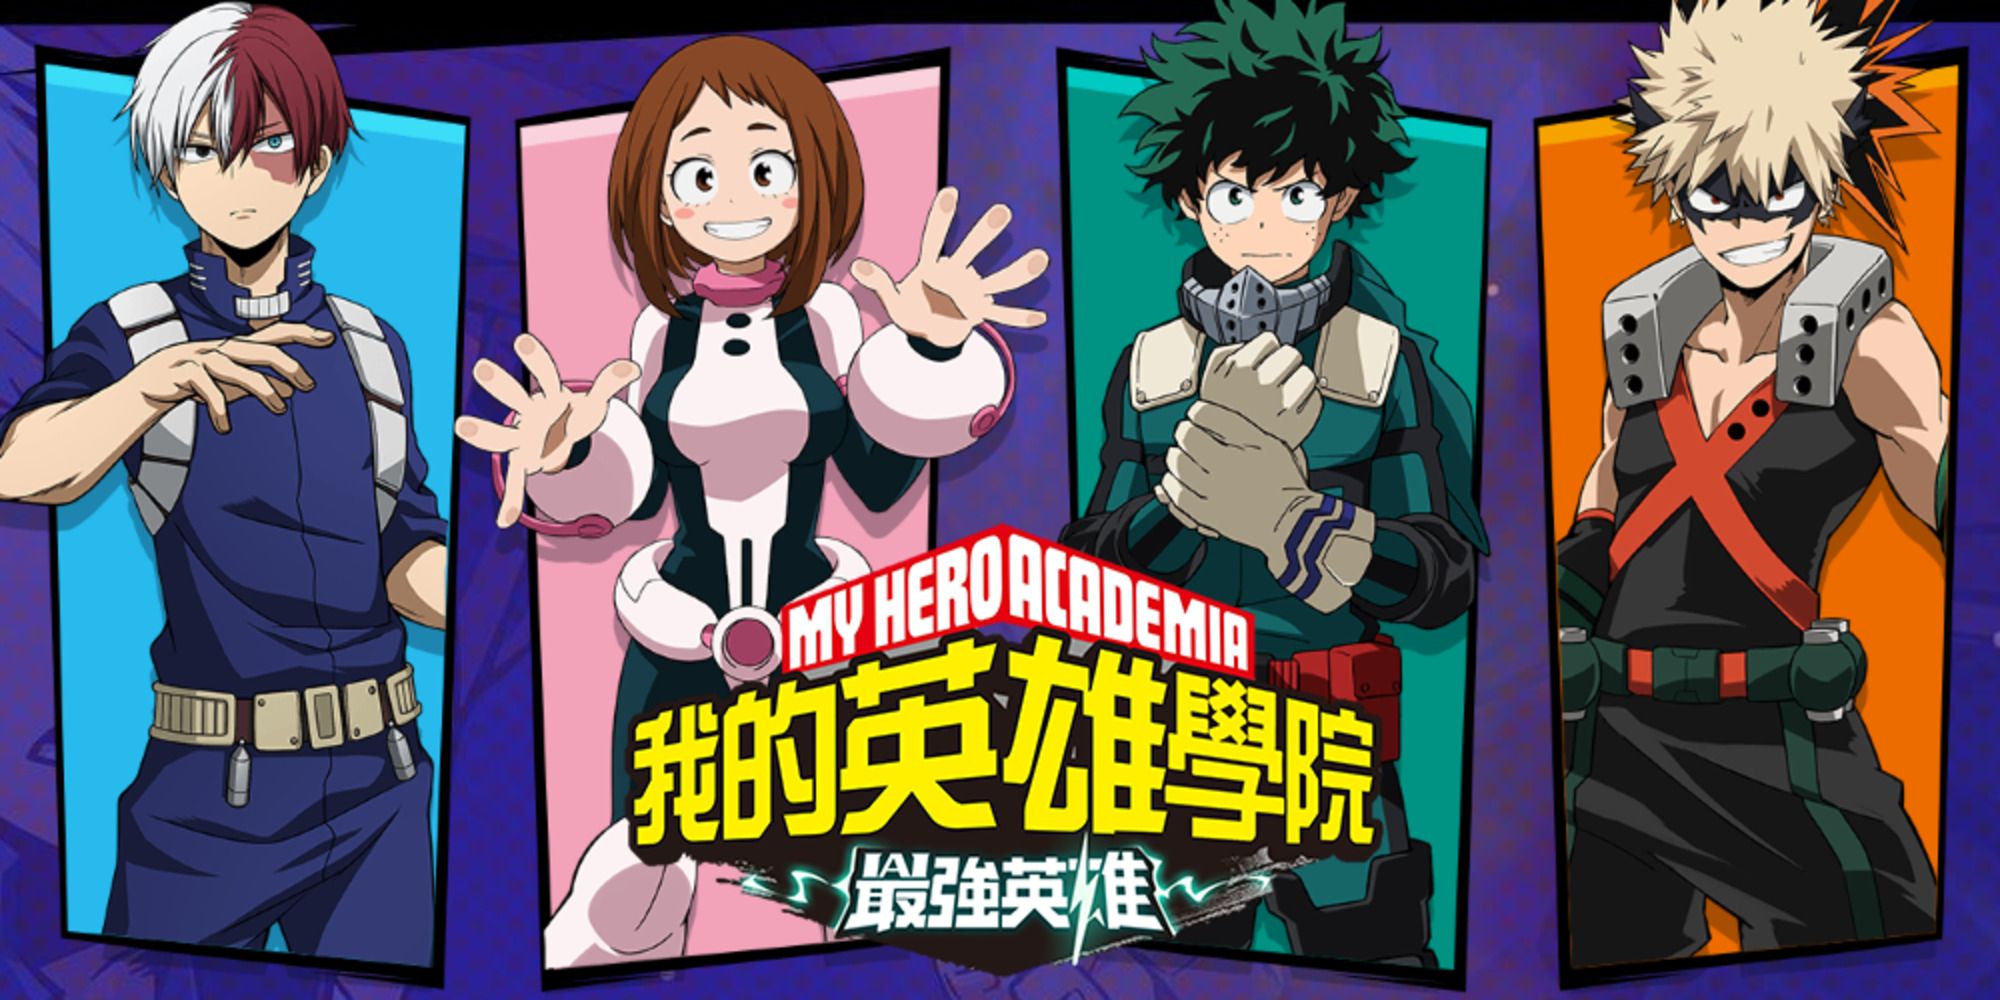 My Hero Academia: The Strongest Hero featuring Shoto, Uraraka, Deku, and Bakugo